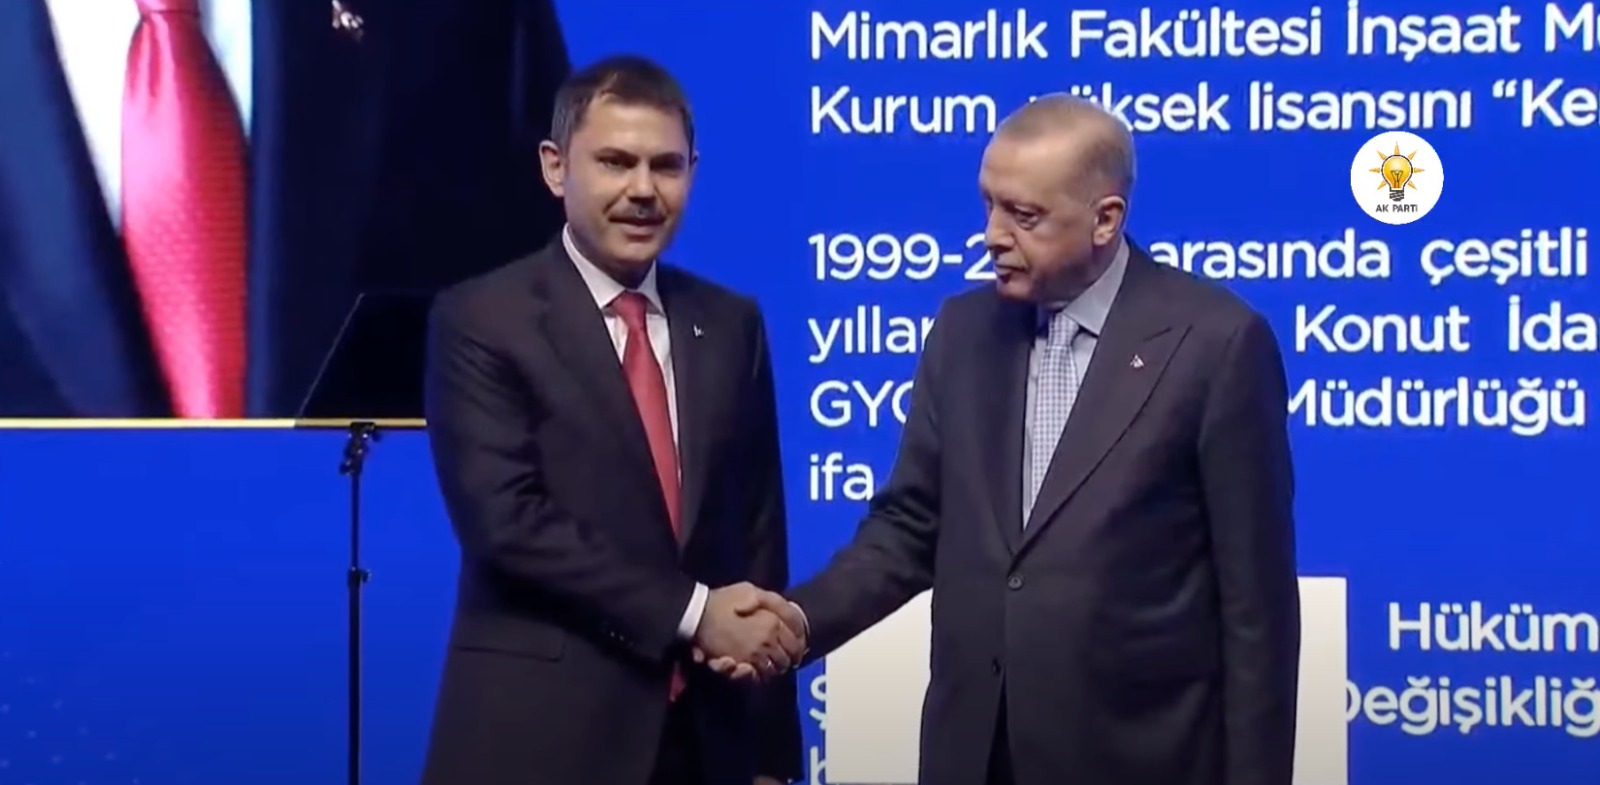 Cumhurbaşkanı Erdoğan, İstanbul ve 25 ilin adaylarını açıkladı